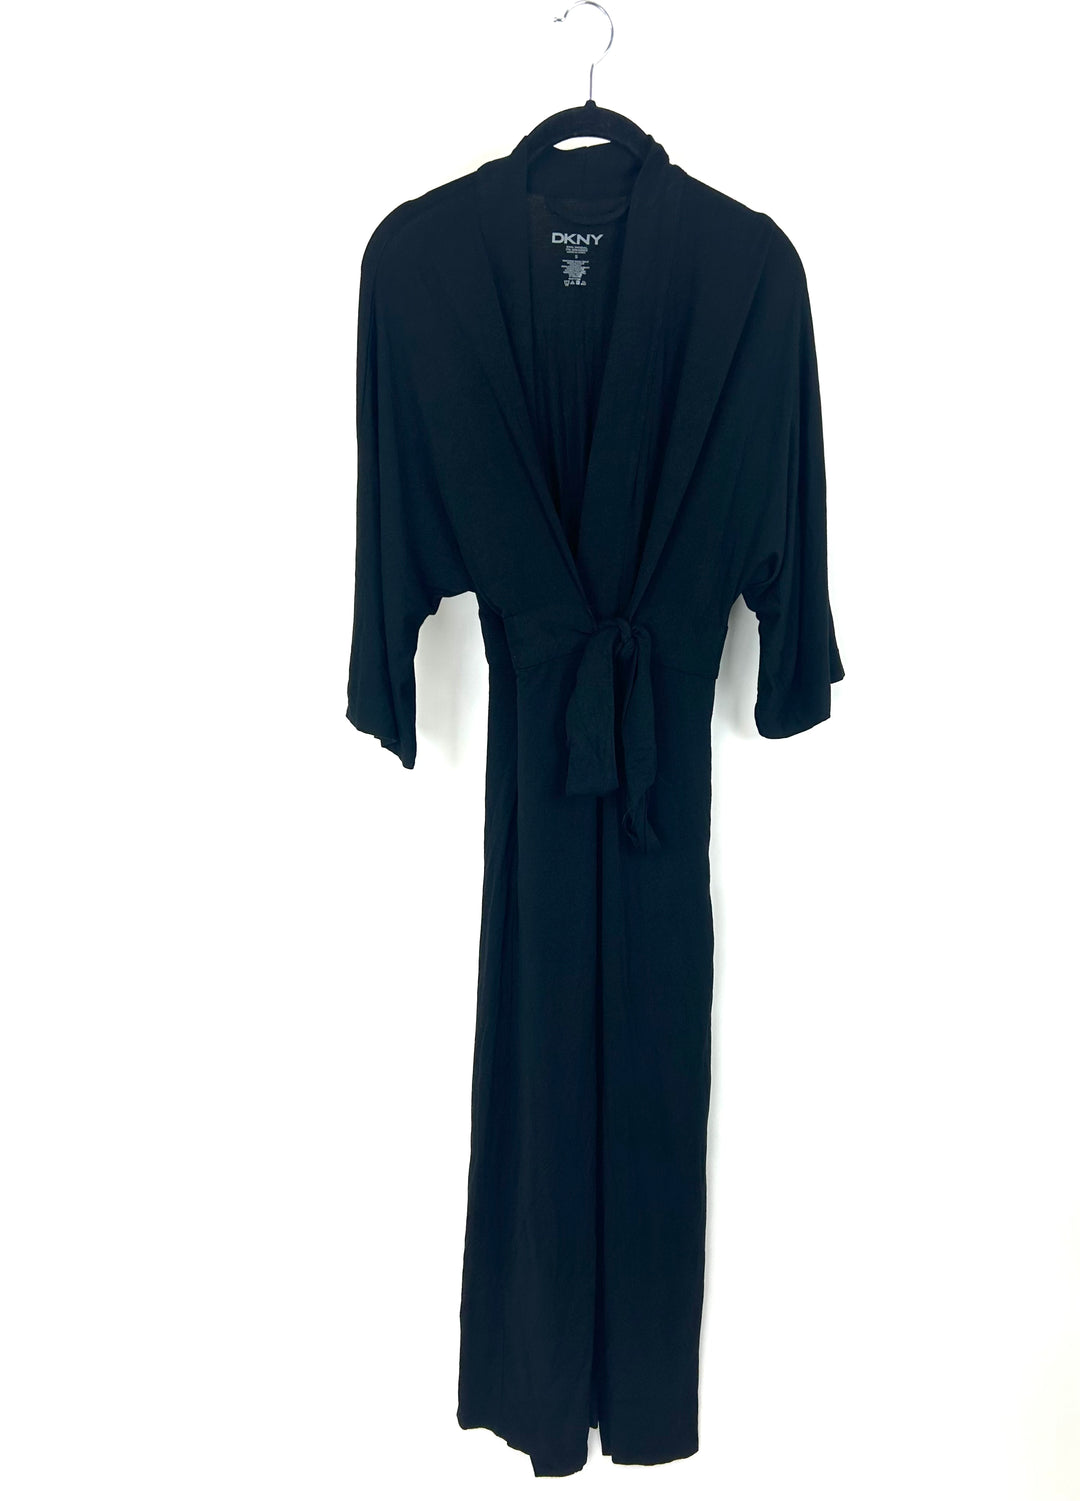 Black Long Robe - Size 4/6